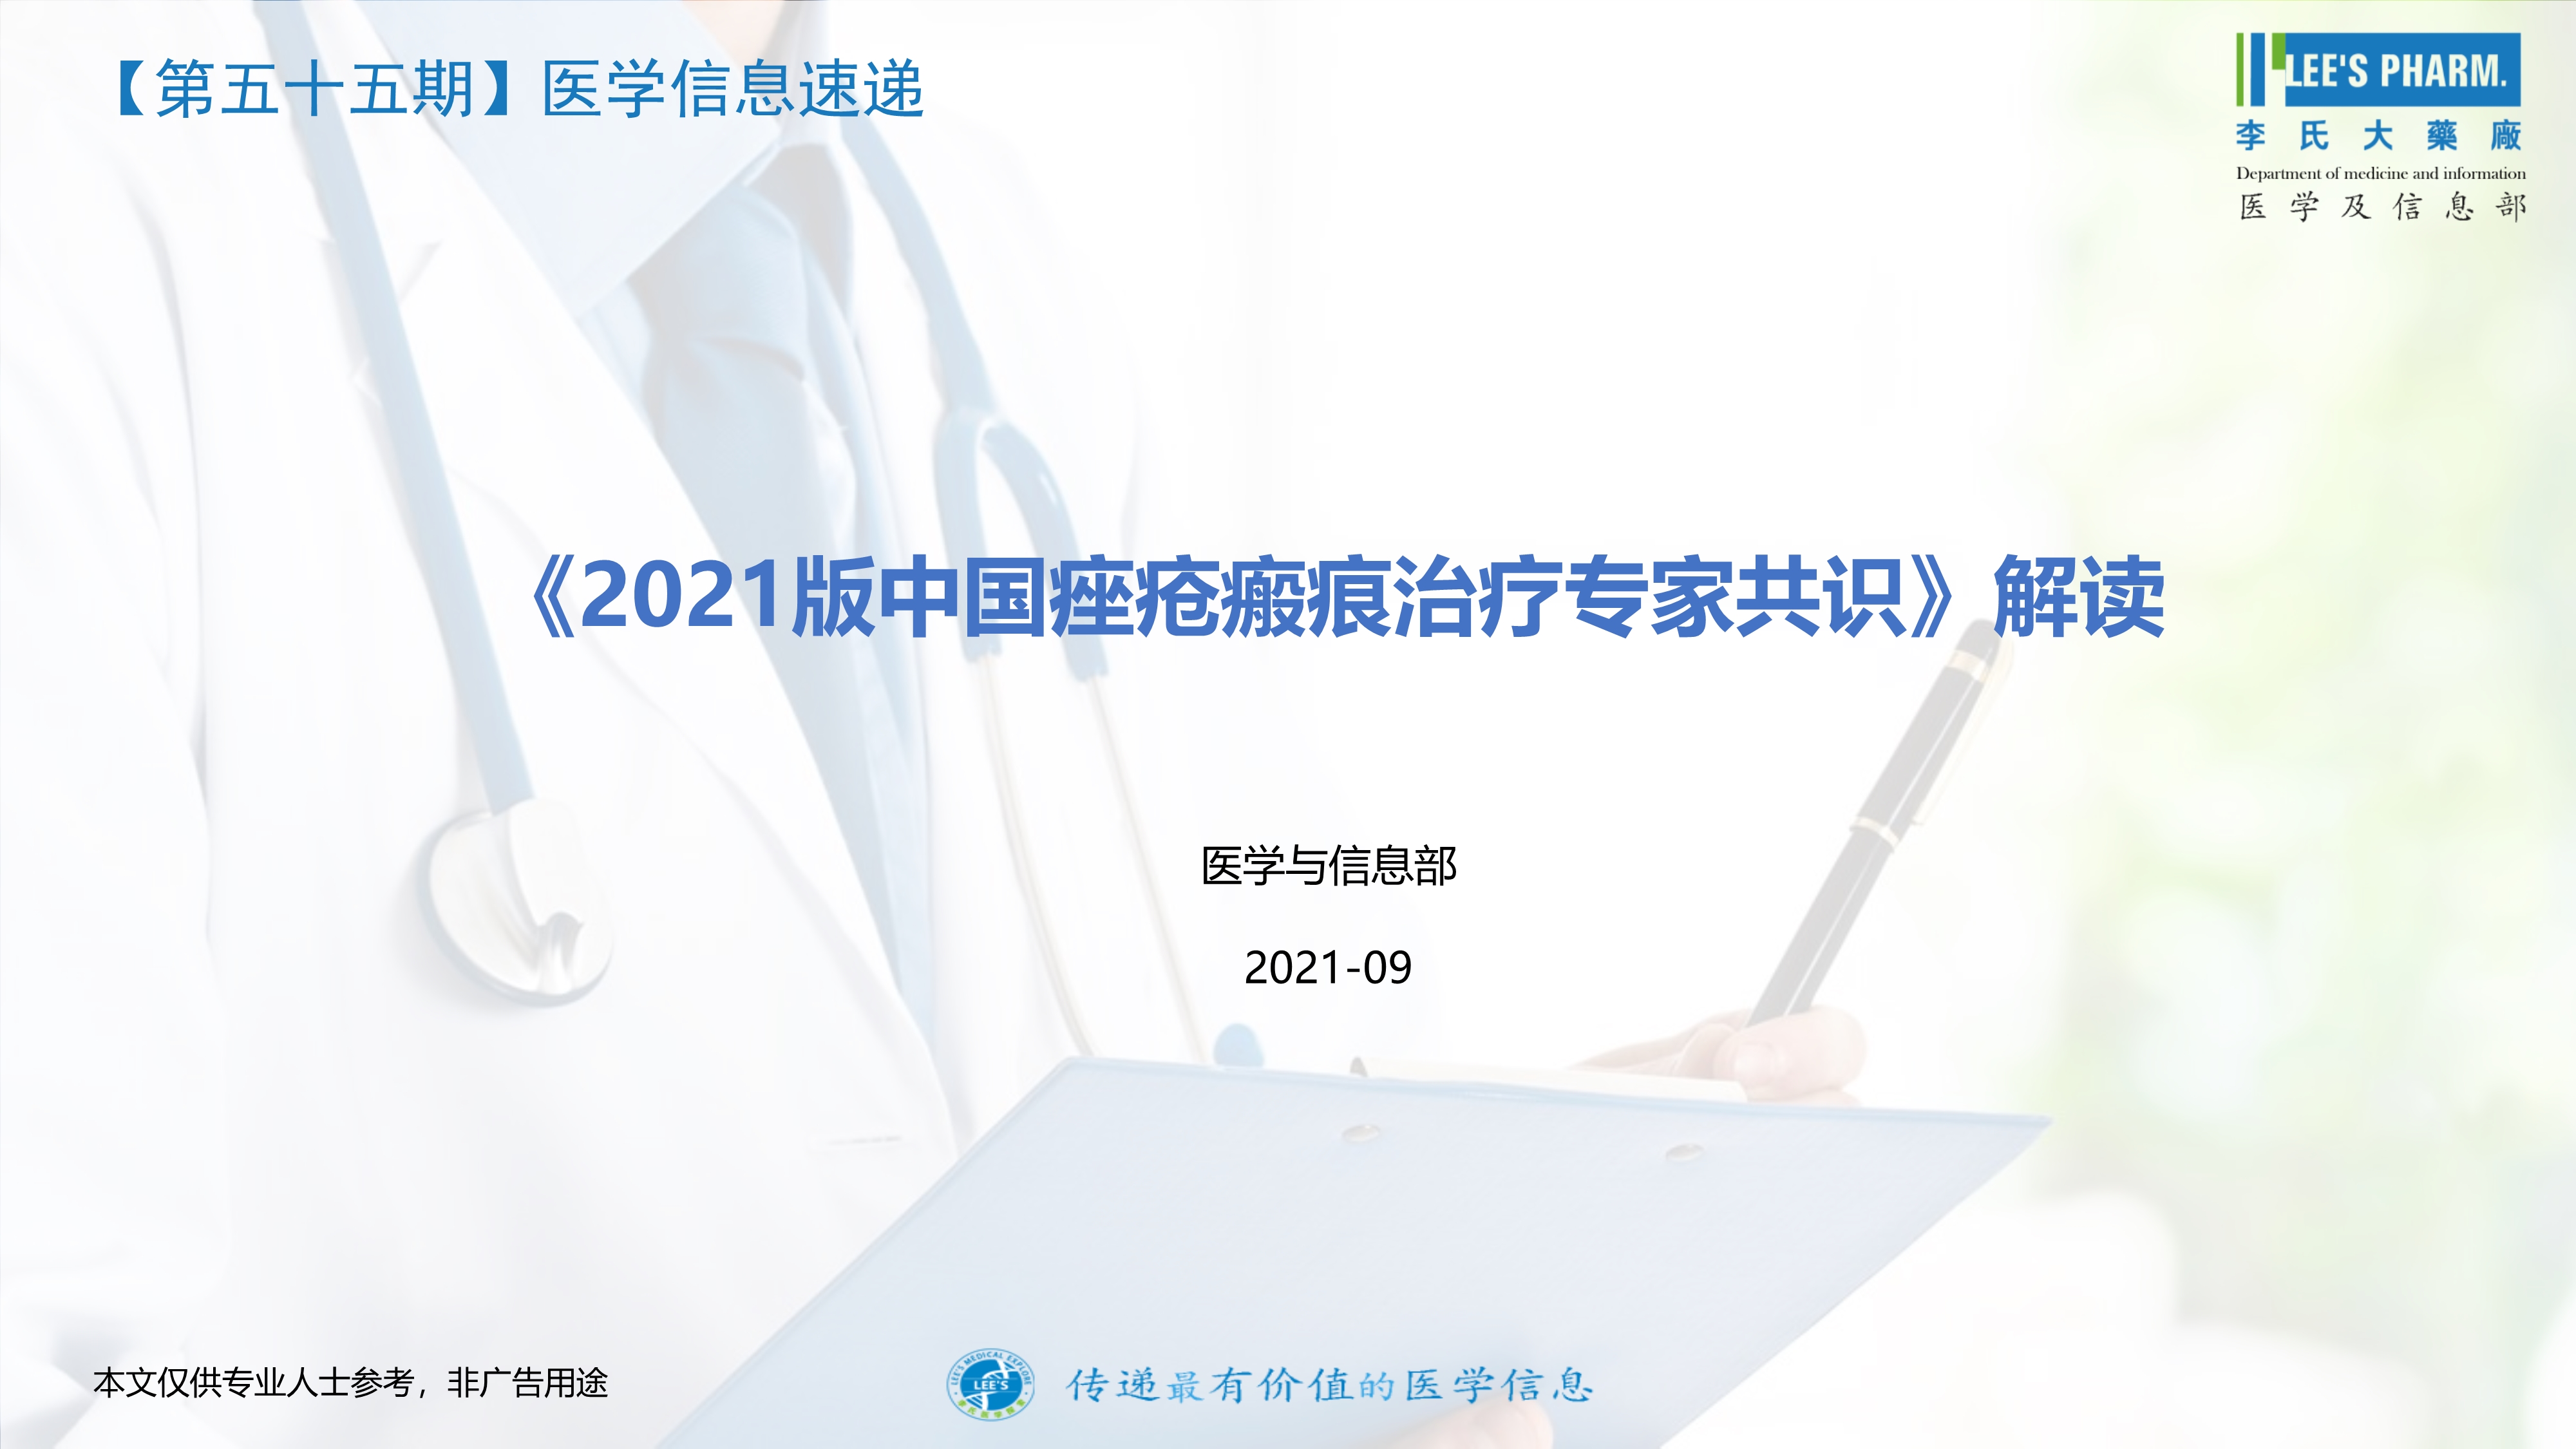 2021版中国痤疮瘢痕治疗专家共识解读